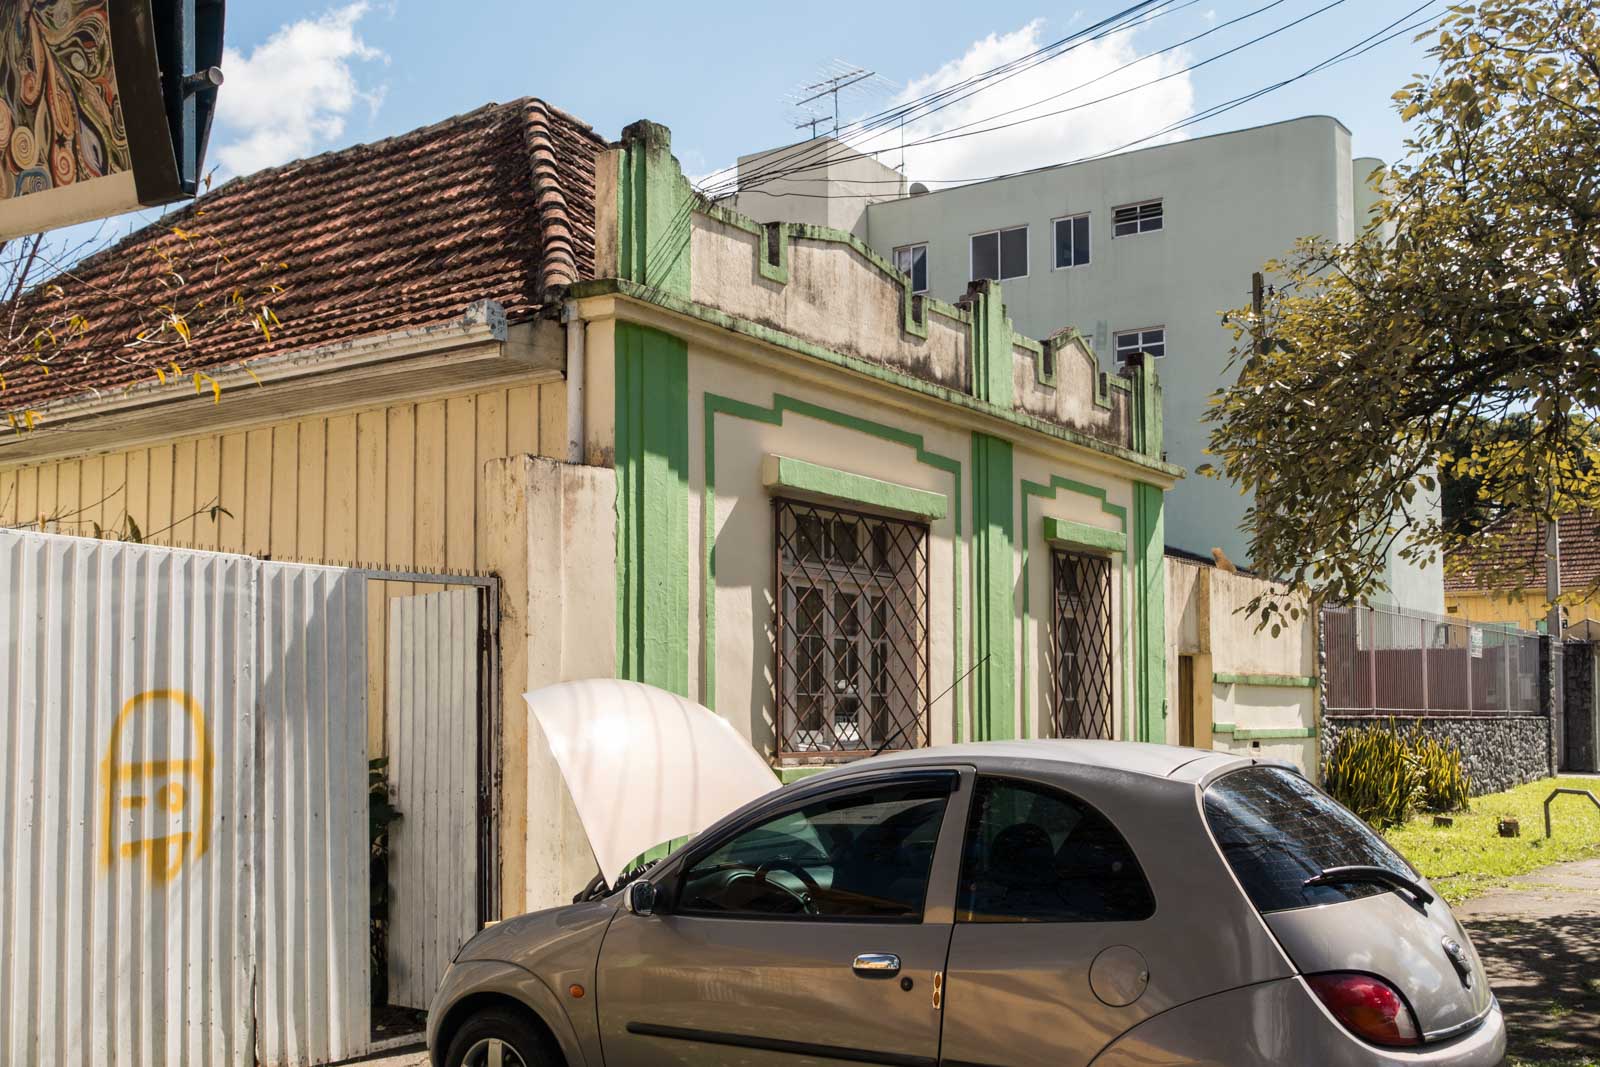 Fotografando Curitiba: Outra casa de madeira no Cristo Rei